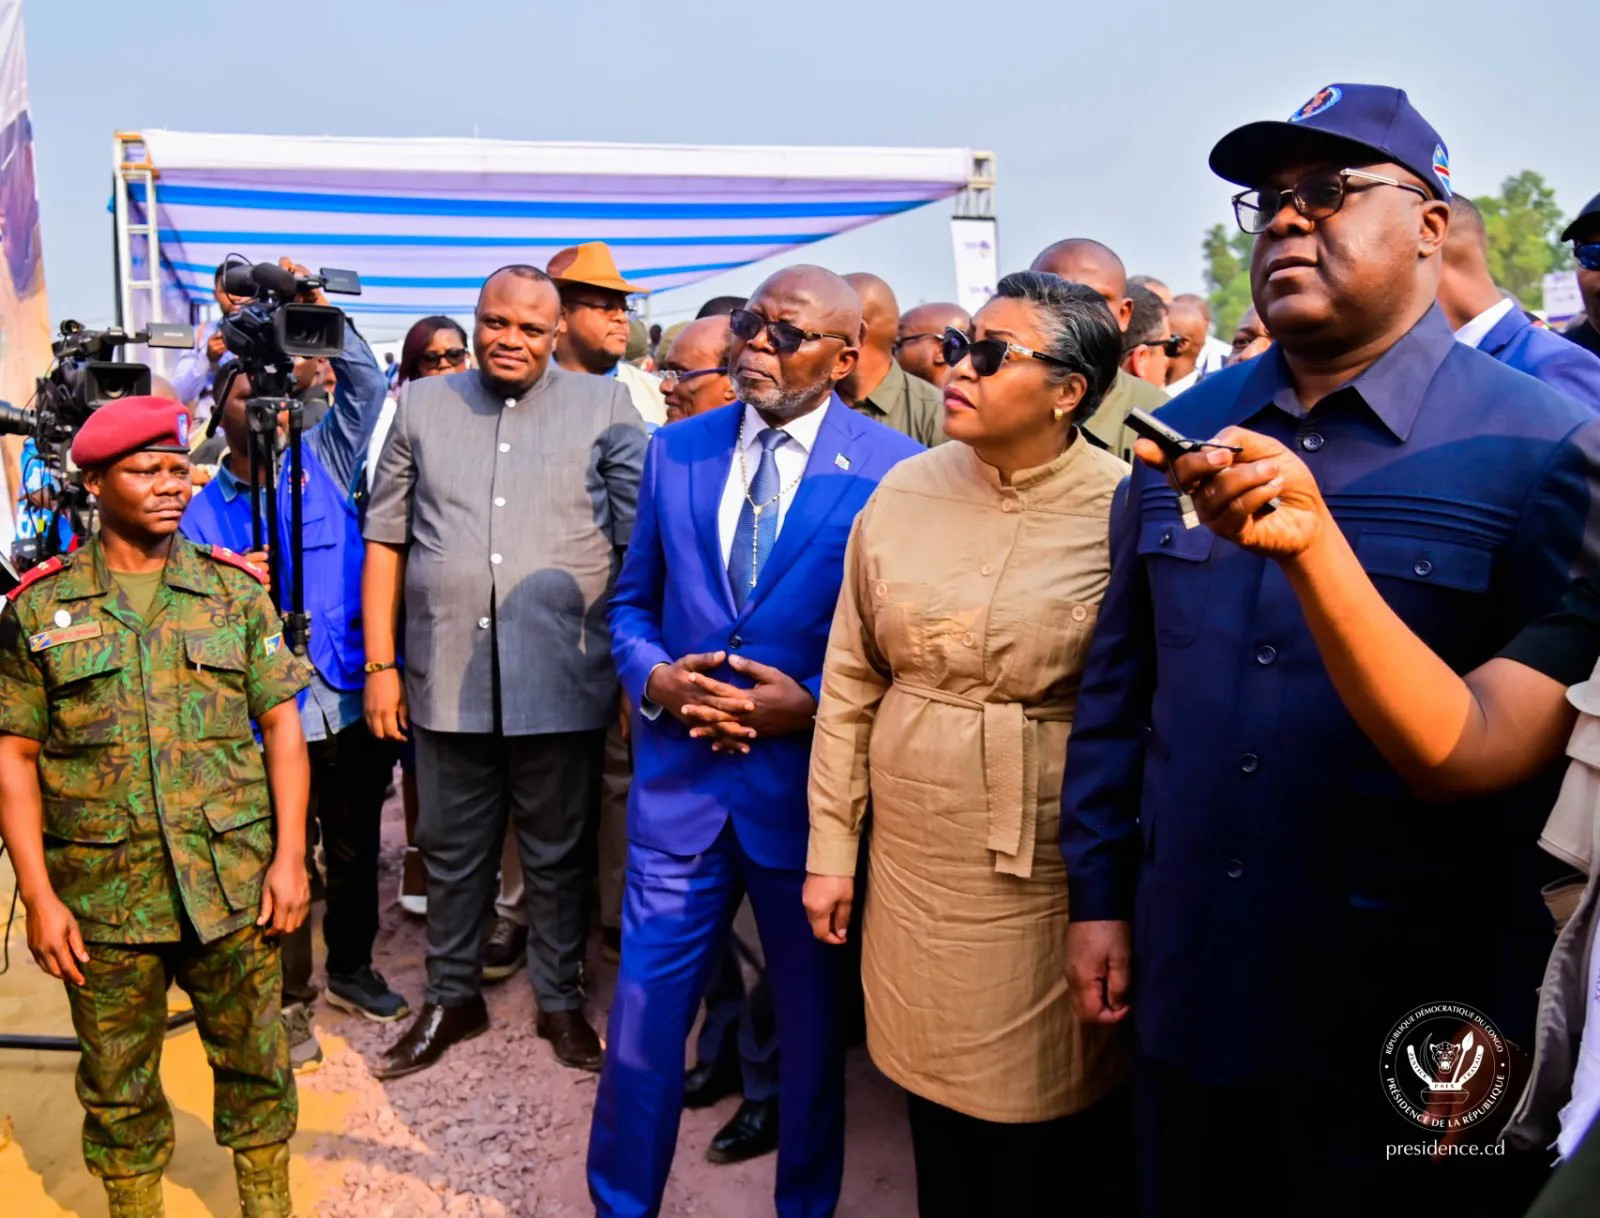 Le Président Félix Tshisekedi inaugure les travaux d'une rocade à Kinshasa